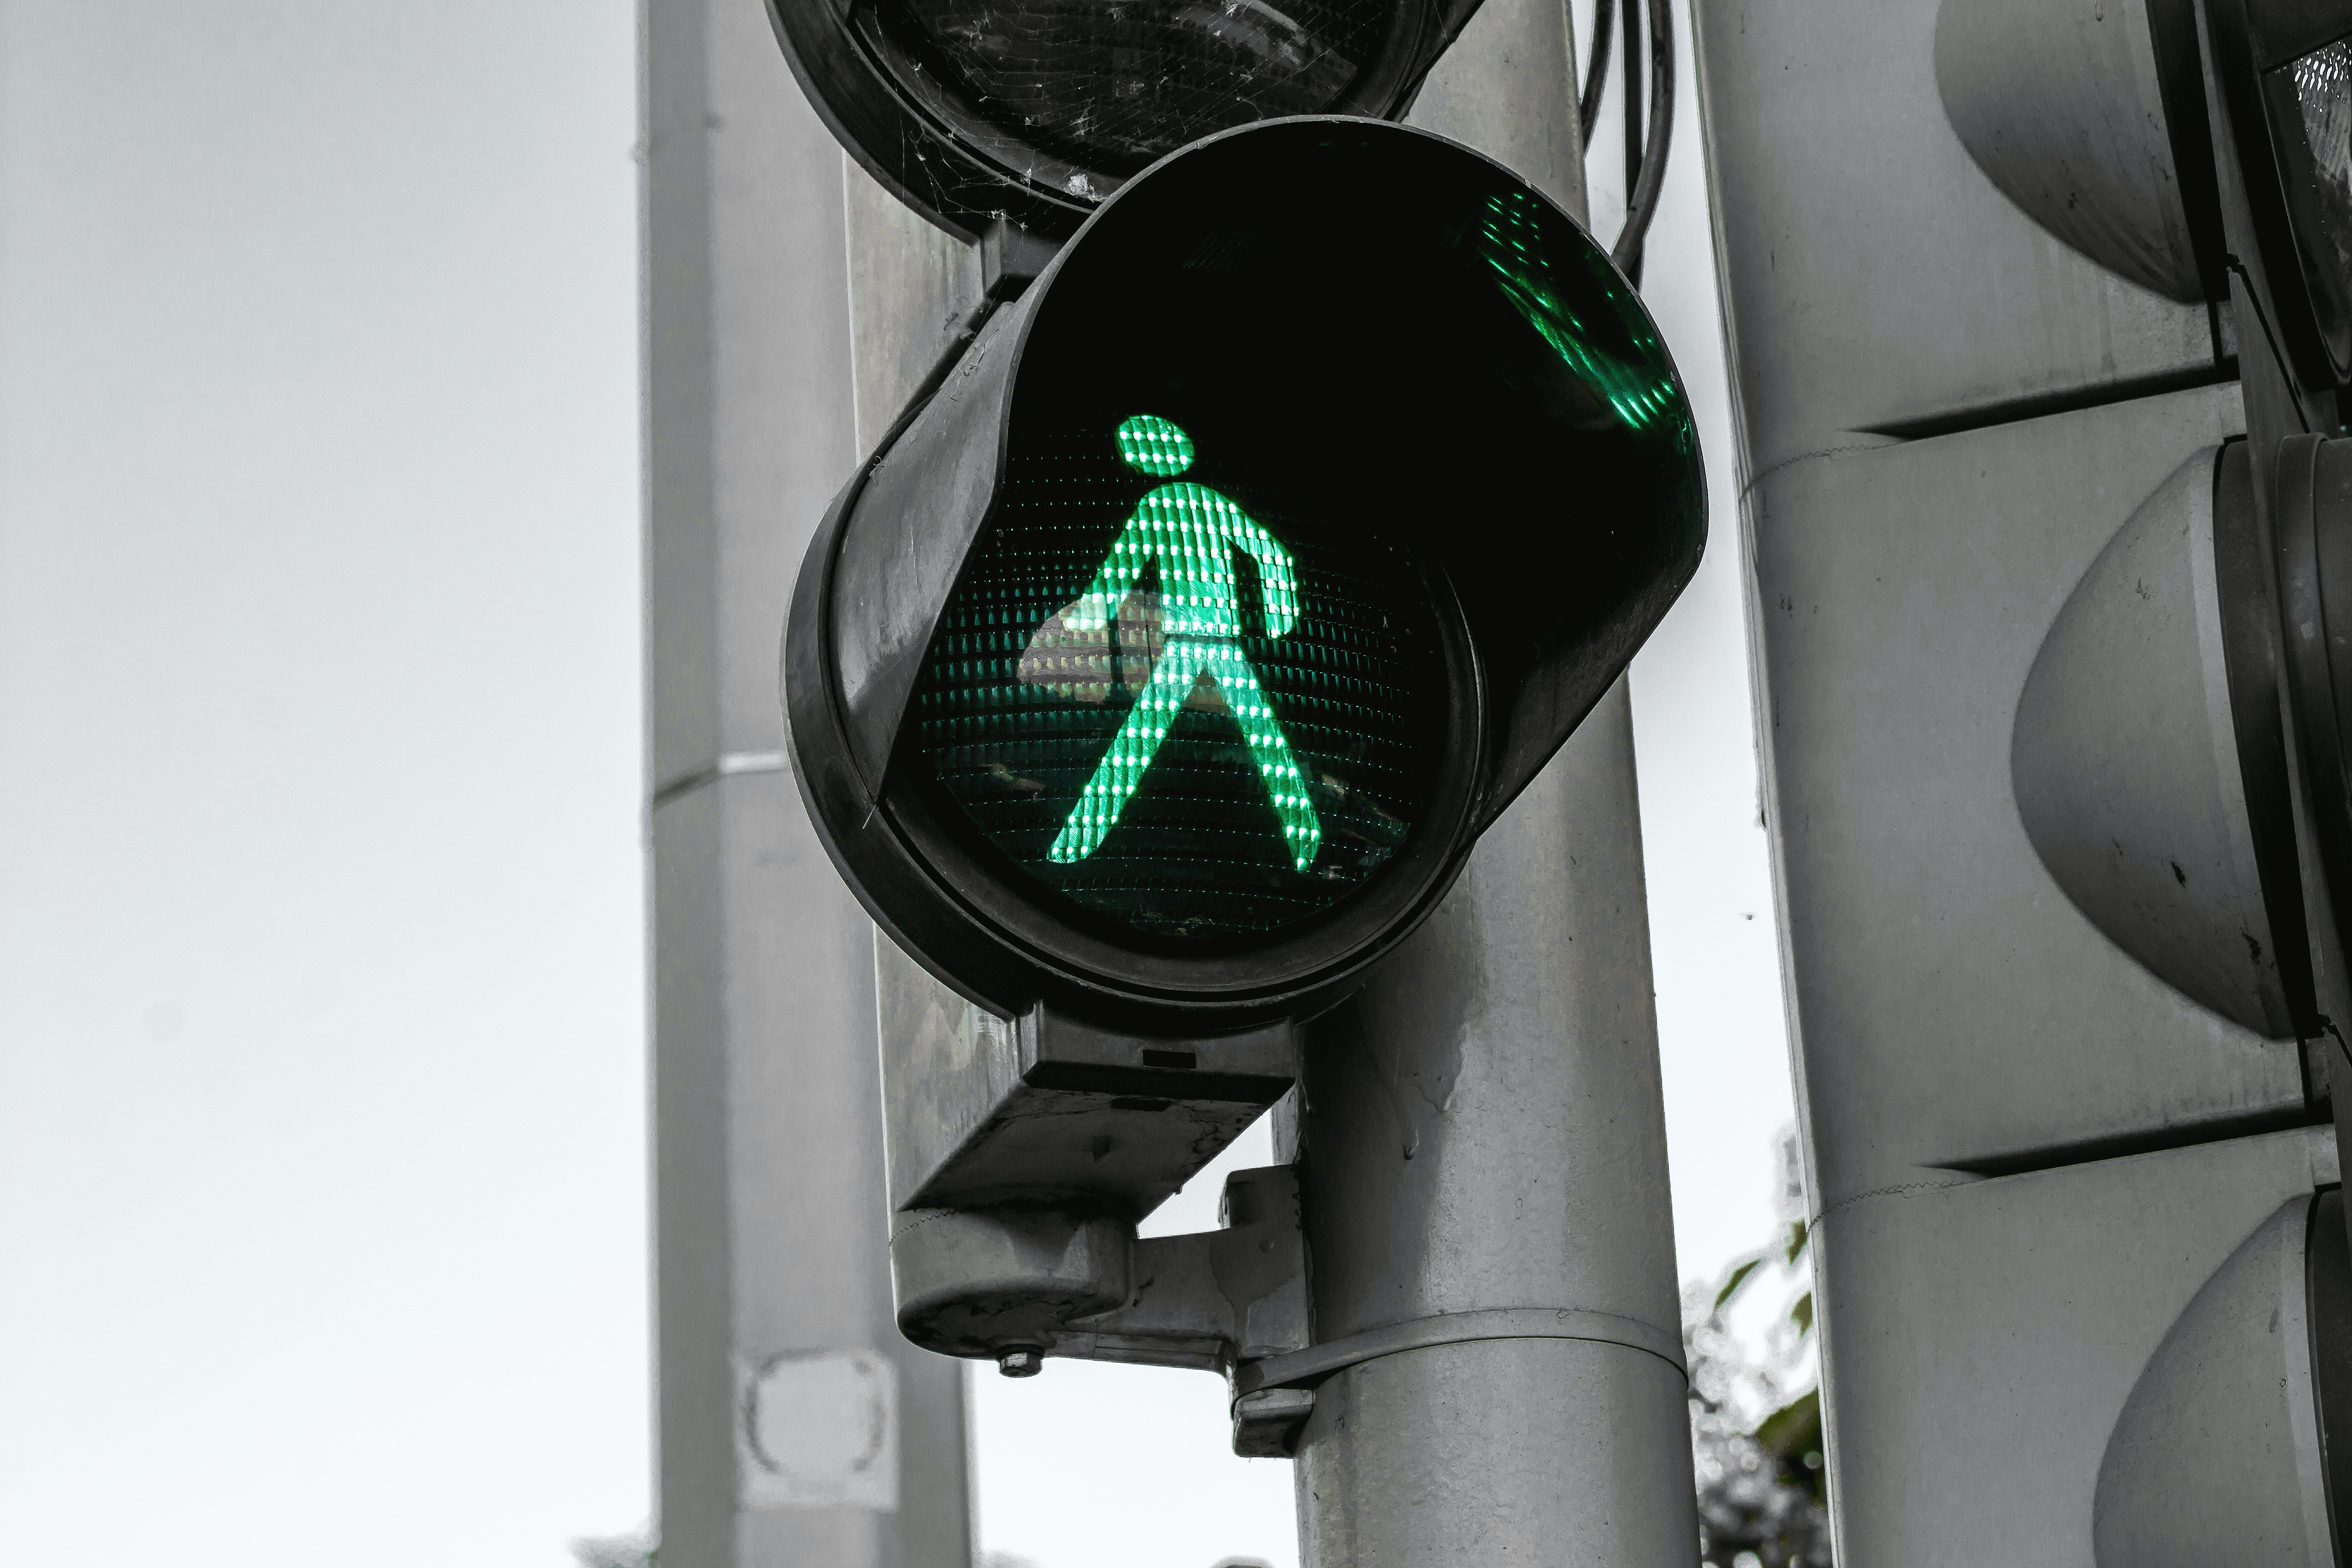 Caminar és, evidentment, la manera més sostenible de moure's. Font: JESHOOTS.com (Pexels)